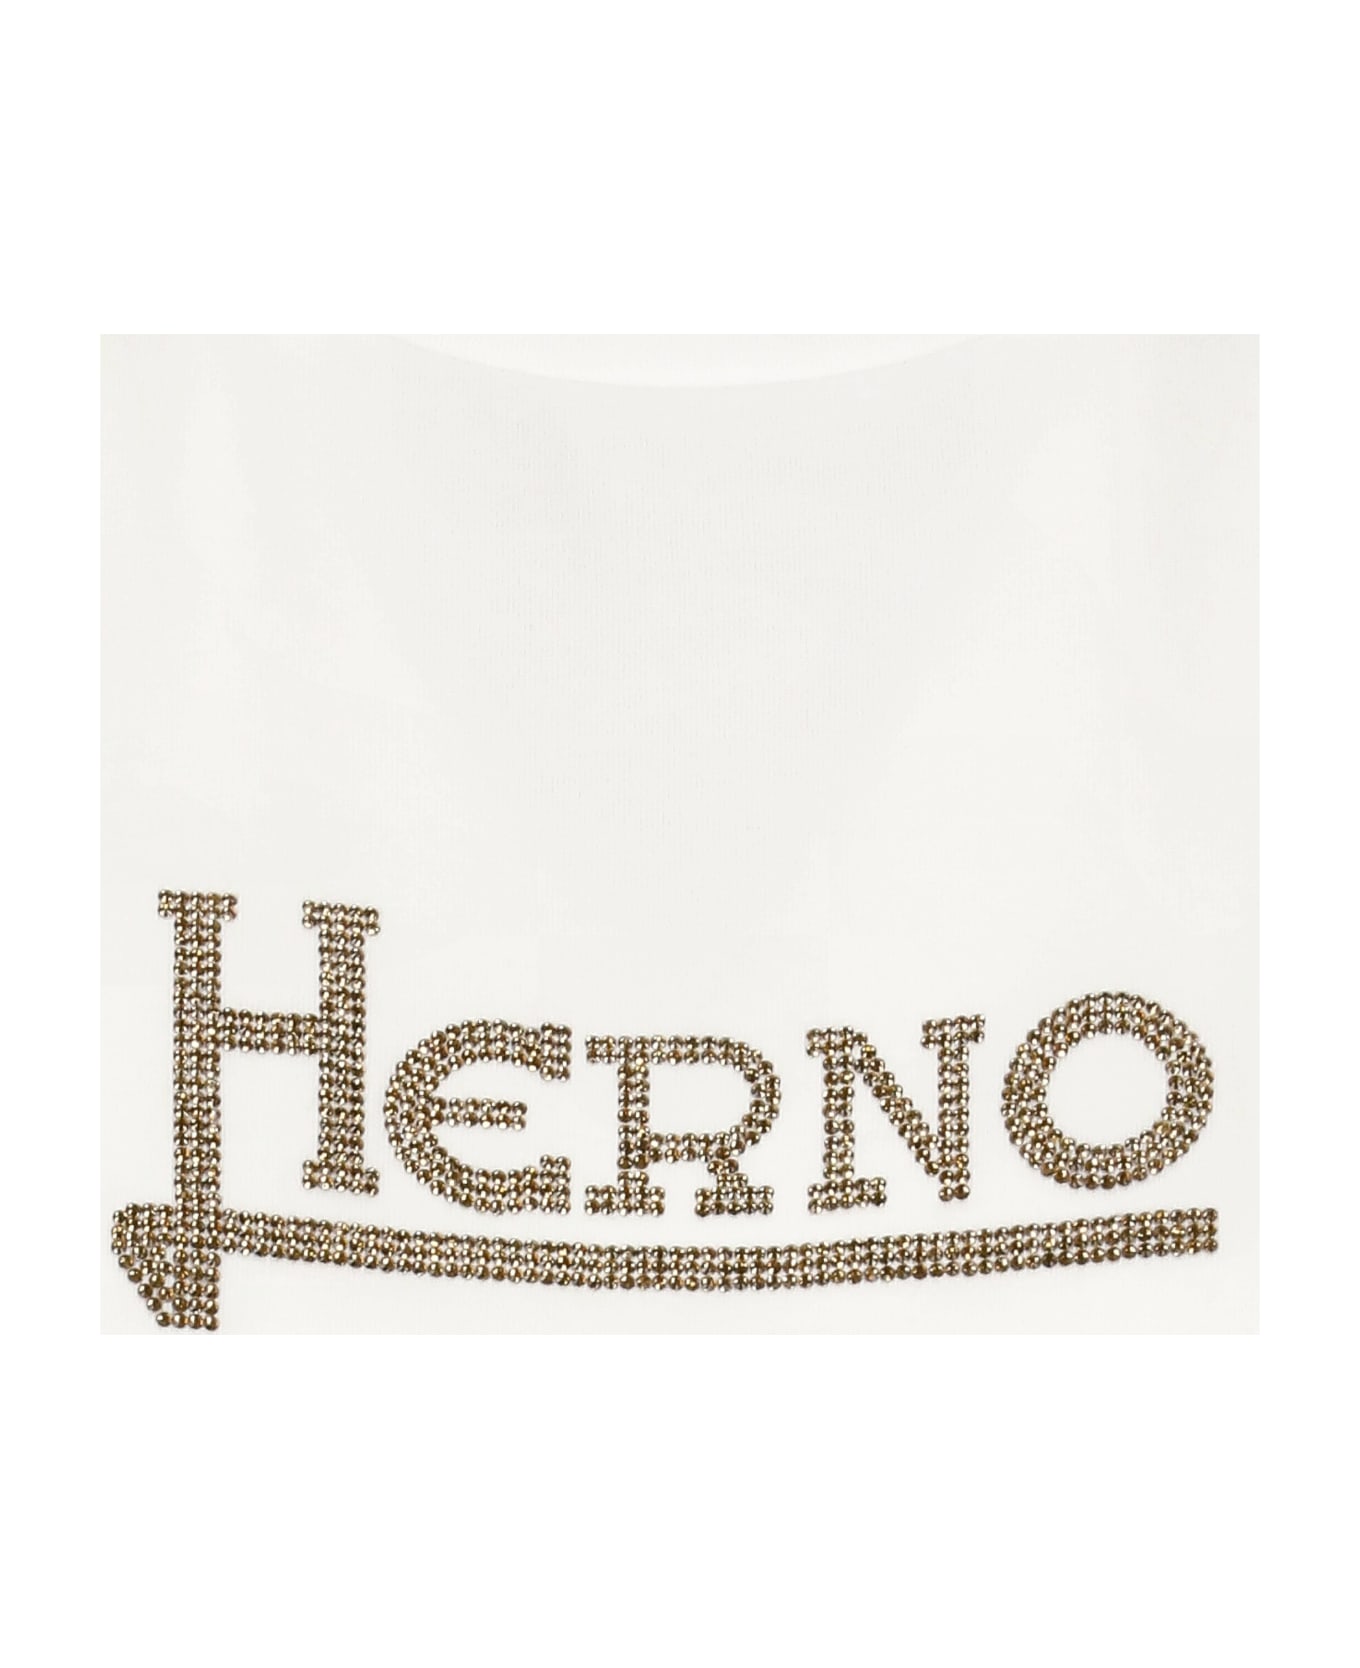 Herno Logo Cotton T-shirt - White